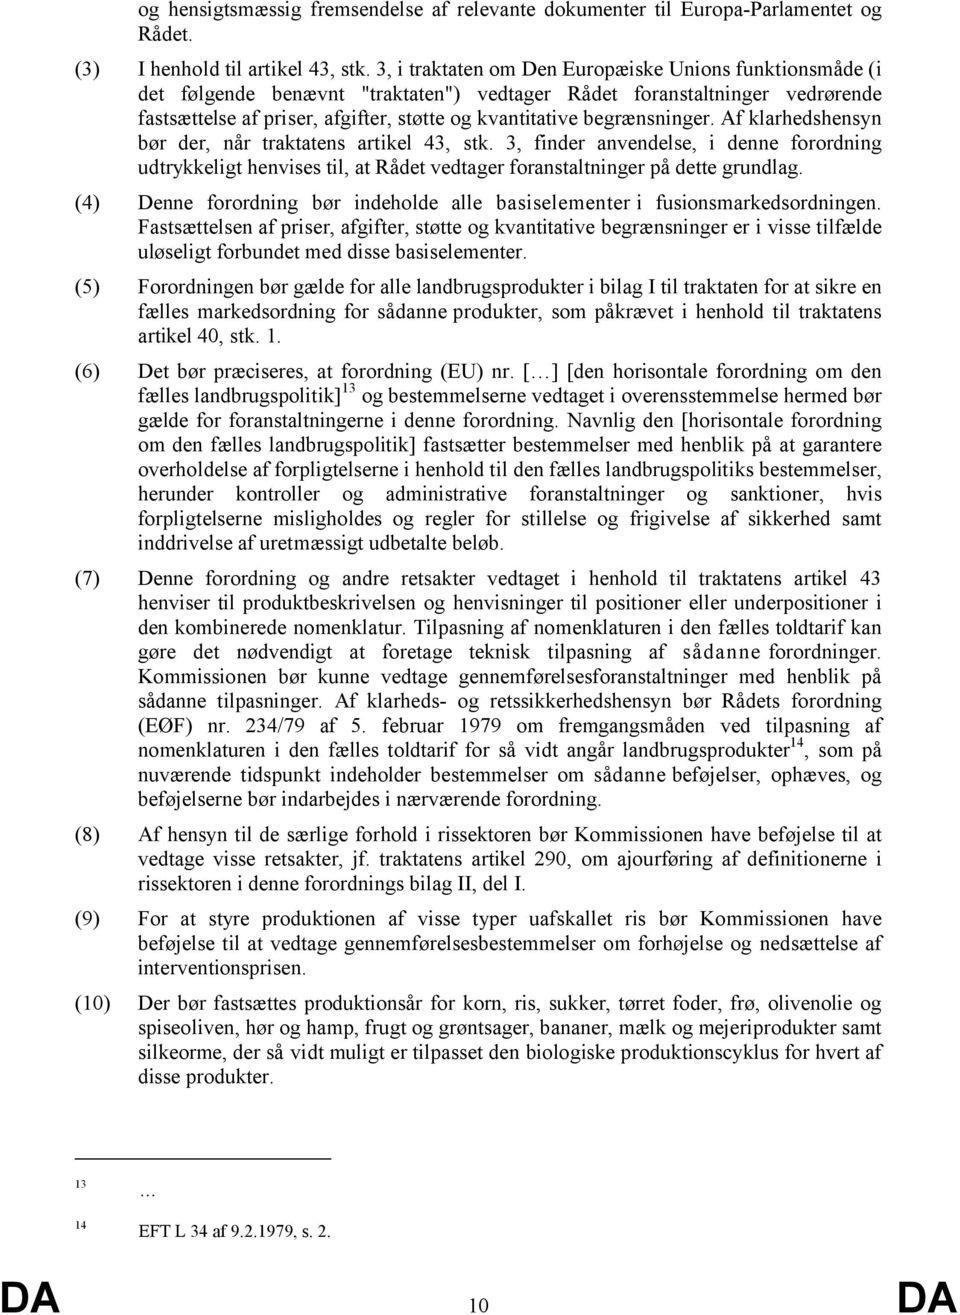 begrænsninger. Af klarhedshensyn bør der, når traktatens artikel 43, stk. 3, finder anvendelse, i denne forordning udtrykkeligt henvises til, at Rådet vedtager foranstaltninger på dette grundlag.